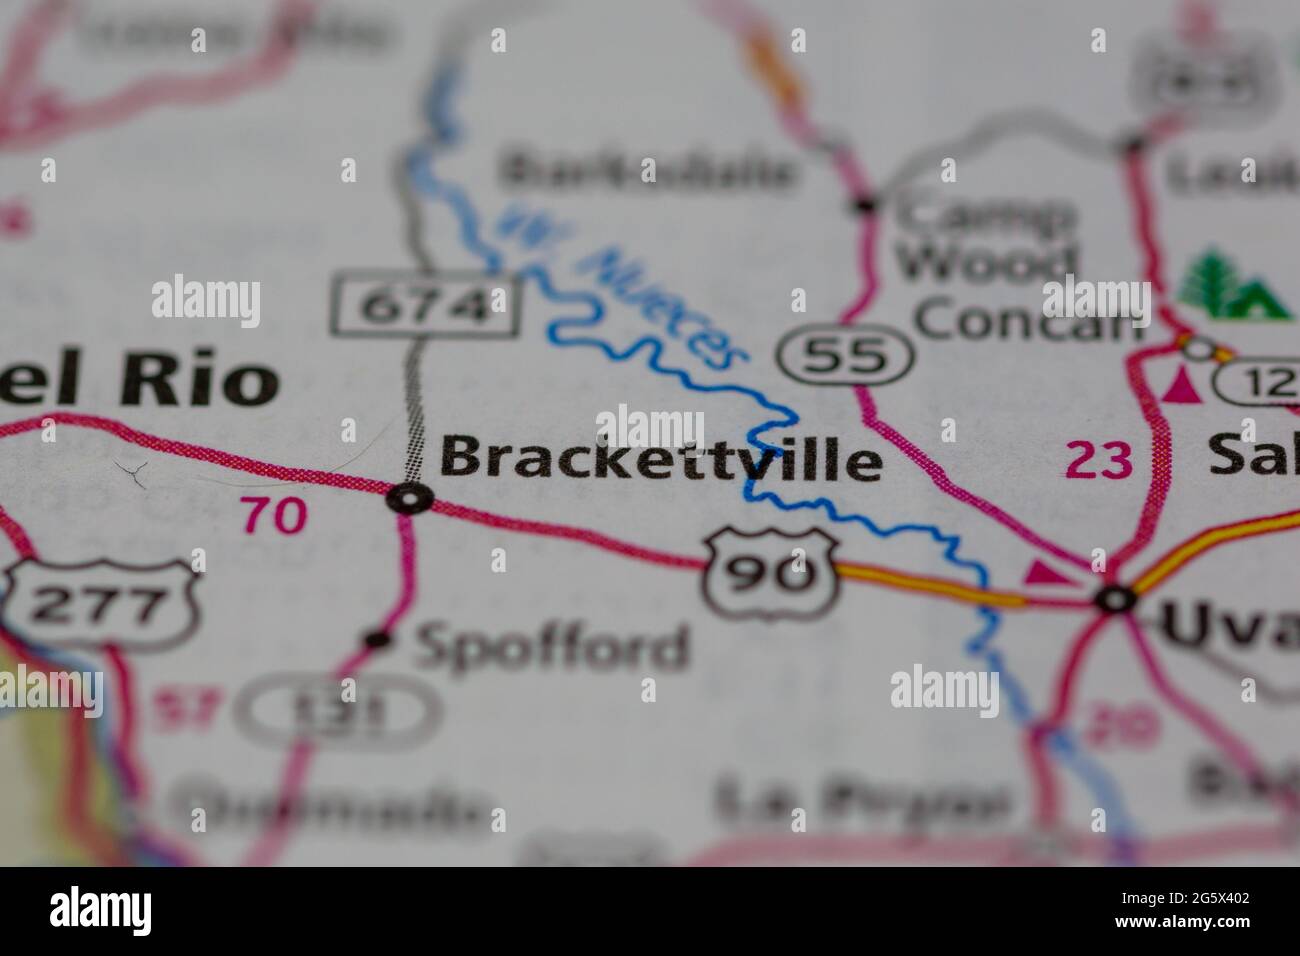 Brackettville Texas USA indiqué sur une carte de géographie ou une carte routière Banque D'Images